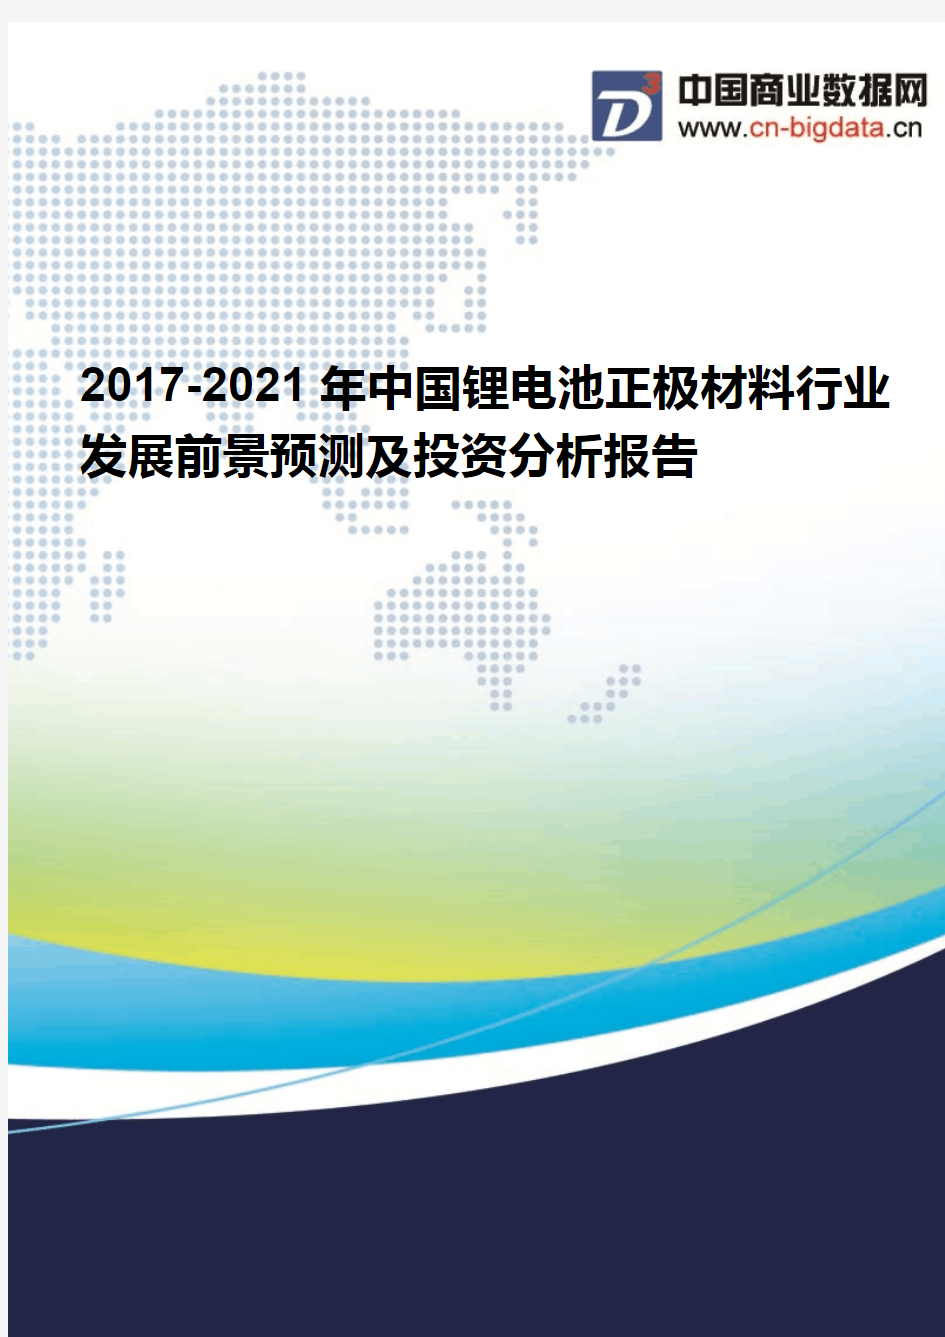 2017-2021年中国锂电池正极材料行业发展前景预测及投资分析报告